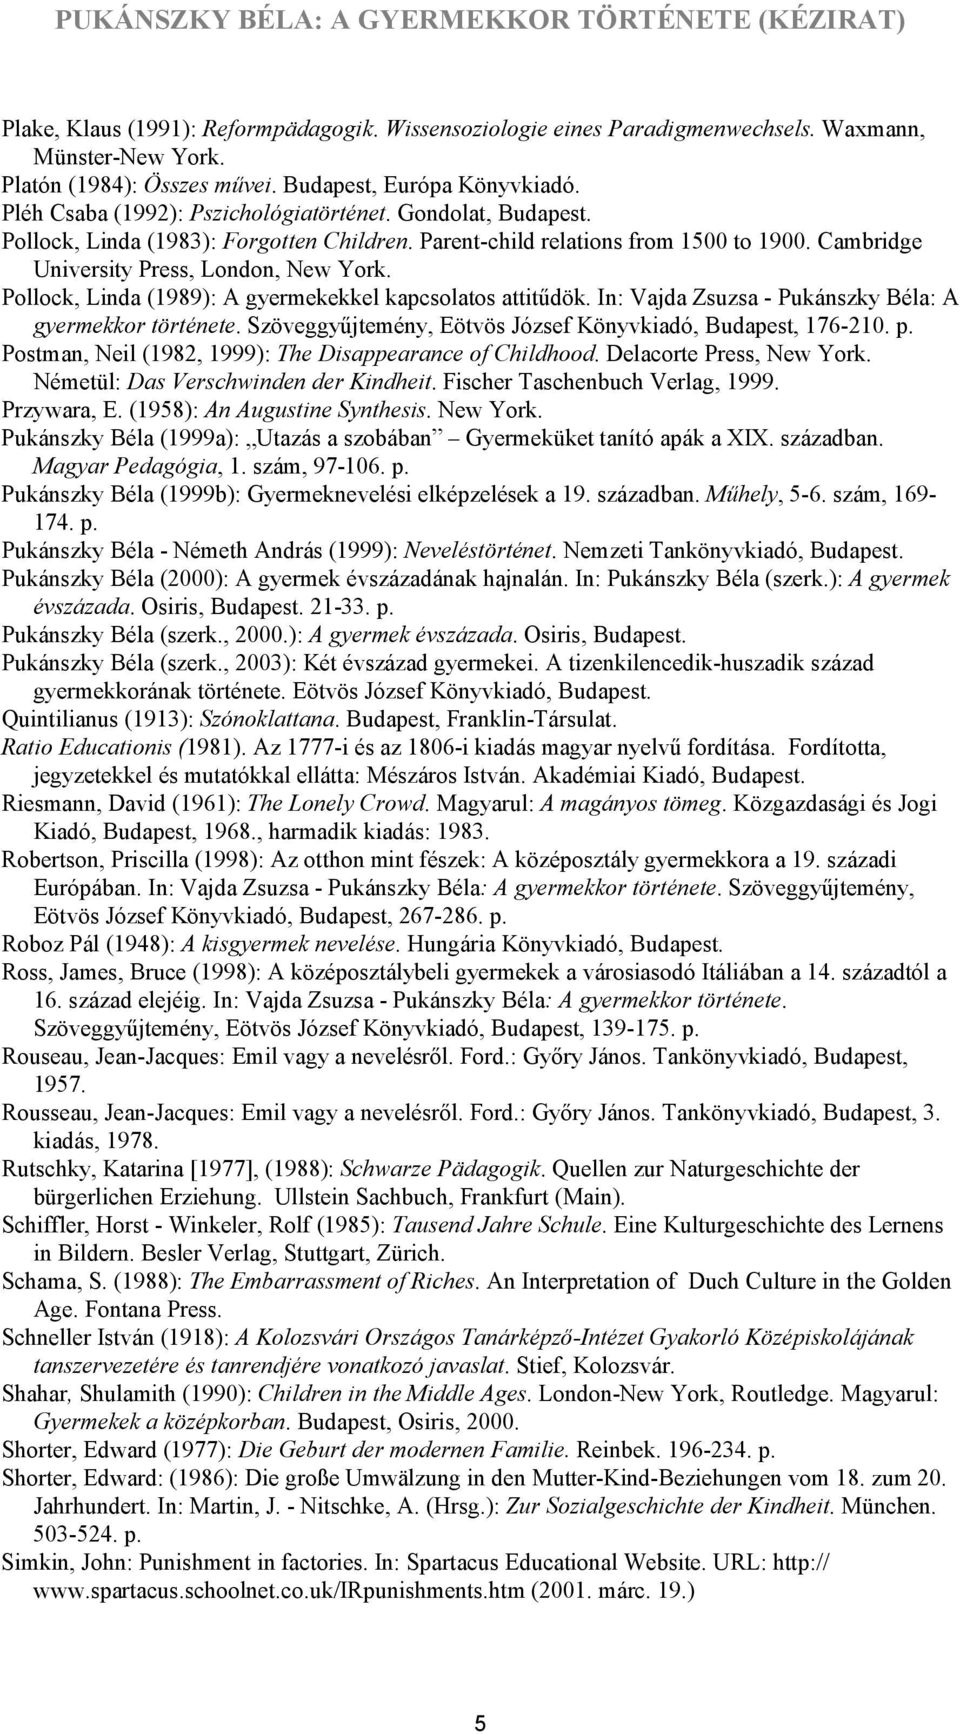 Pollock, Linda (1989): A gyermekekkel kapcsolatos attitűdök. In: Vajda Zsuzsa - Pukánszky Béla: A gyermekkor története. Szöveggyűjtemény, Eötvös József Könyvkiadó, Budapest, 176-210. p.